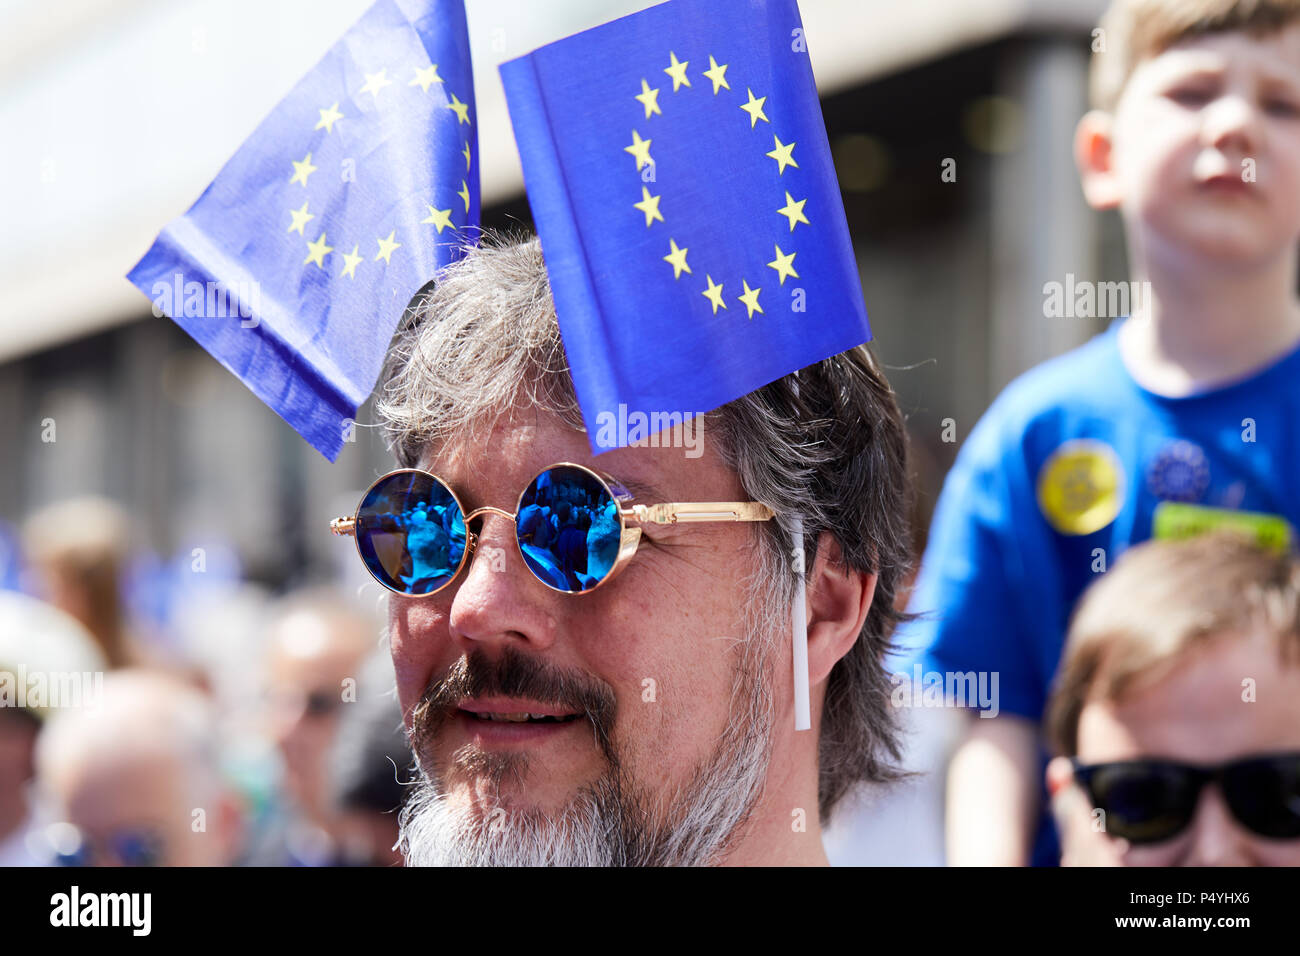 Londres, Reino Unido. 23 de junio de 2018: un hombre vestido con banderas de la UE en el voto popular de marzo. Crédito: Kevin Frost/Alamy Live News Foto de stock